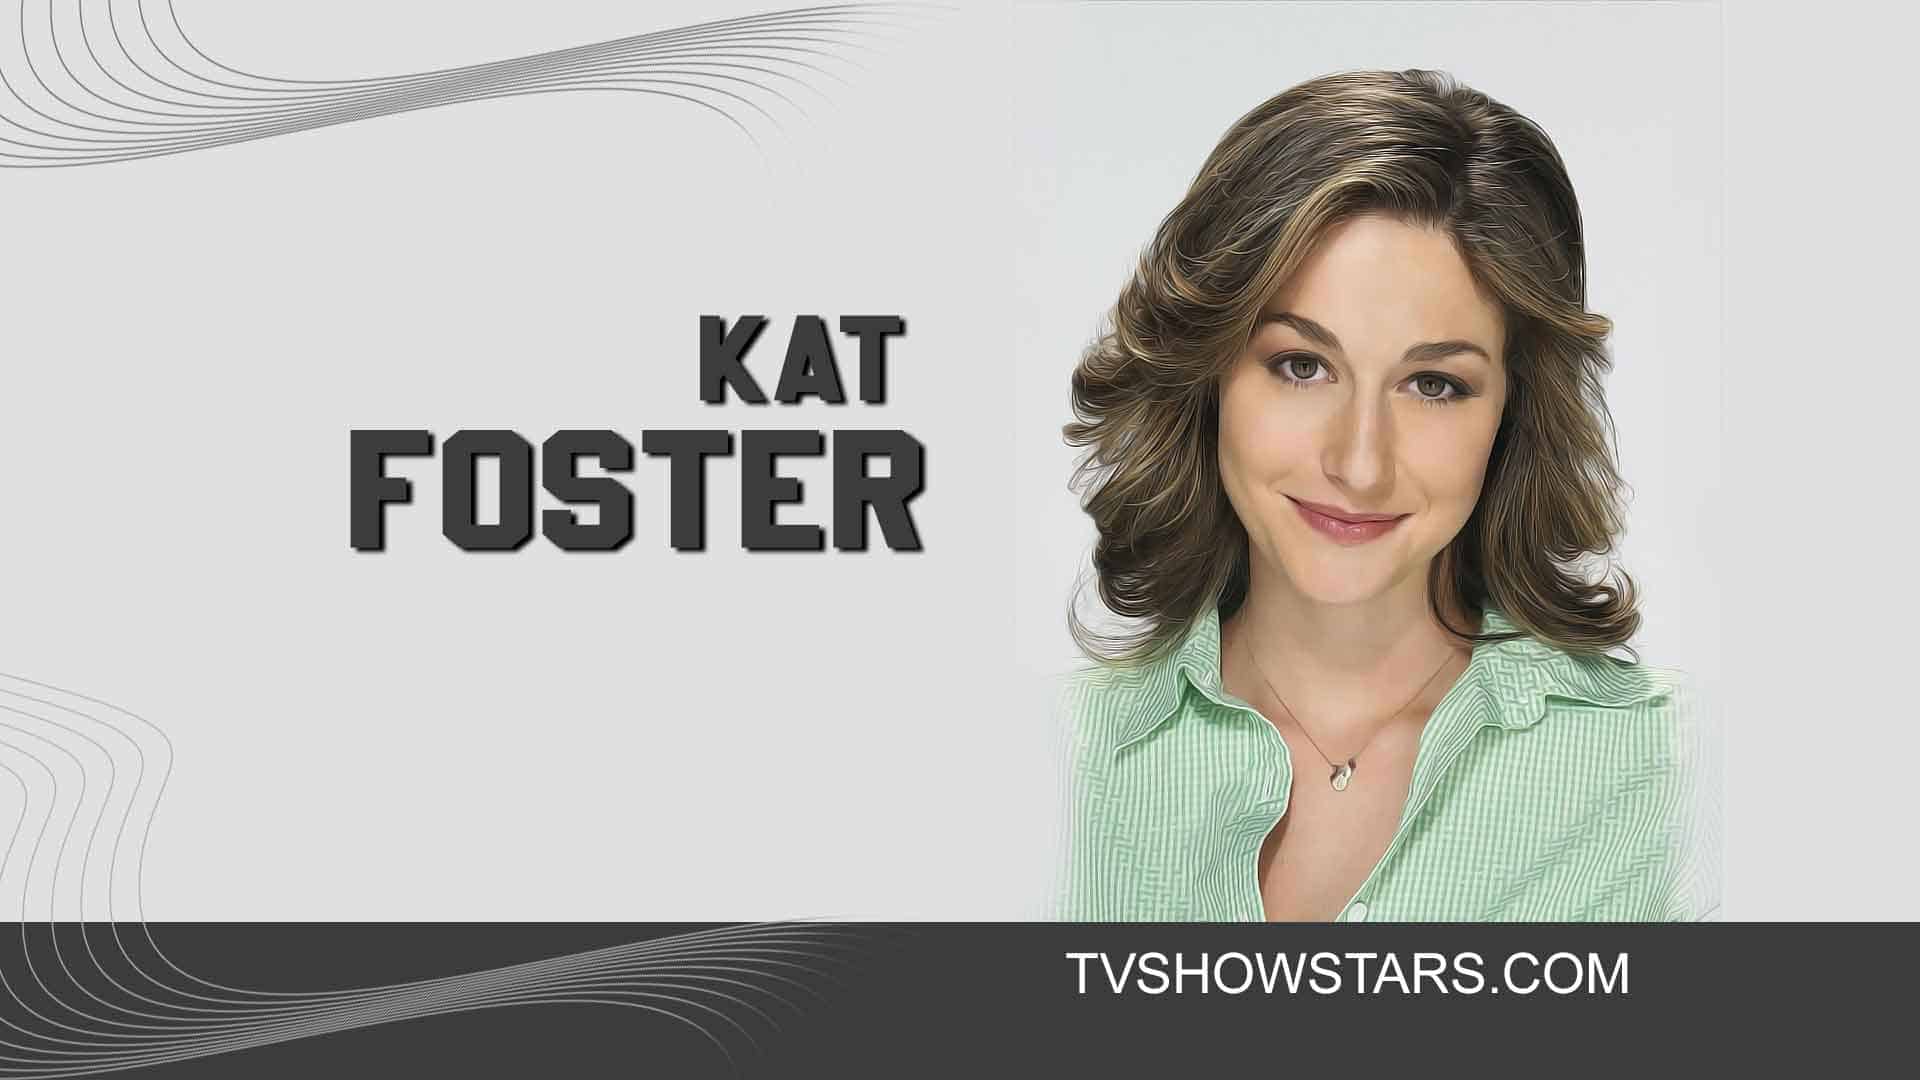 Kat foster actress